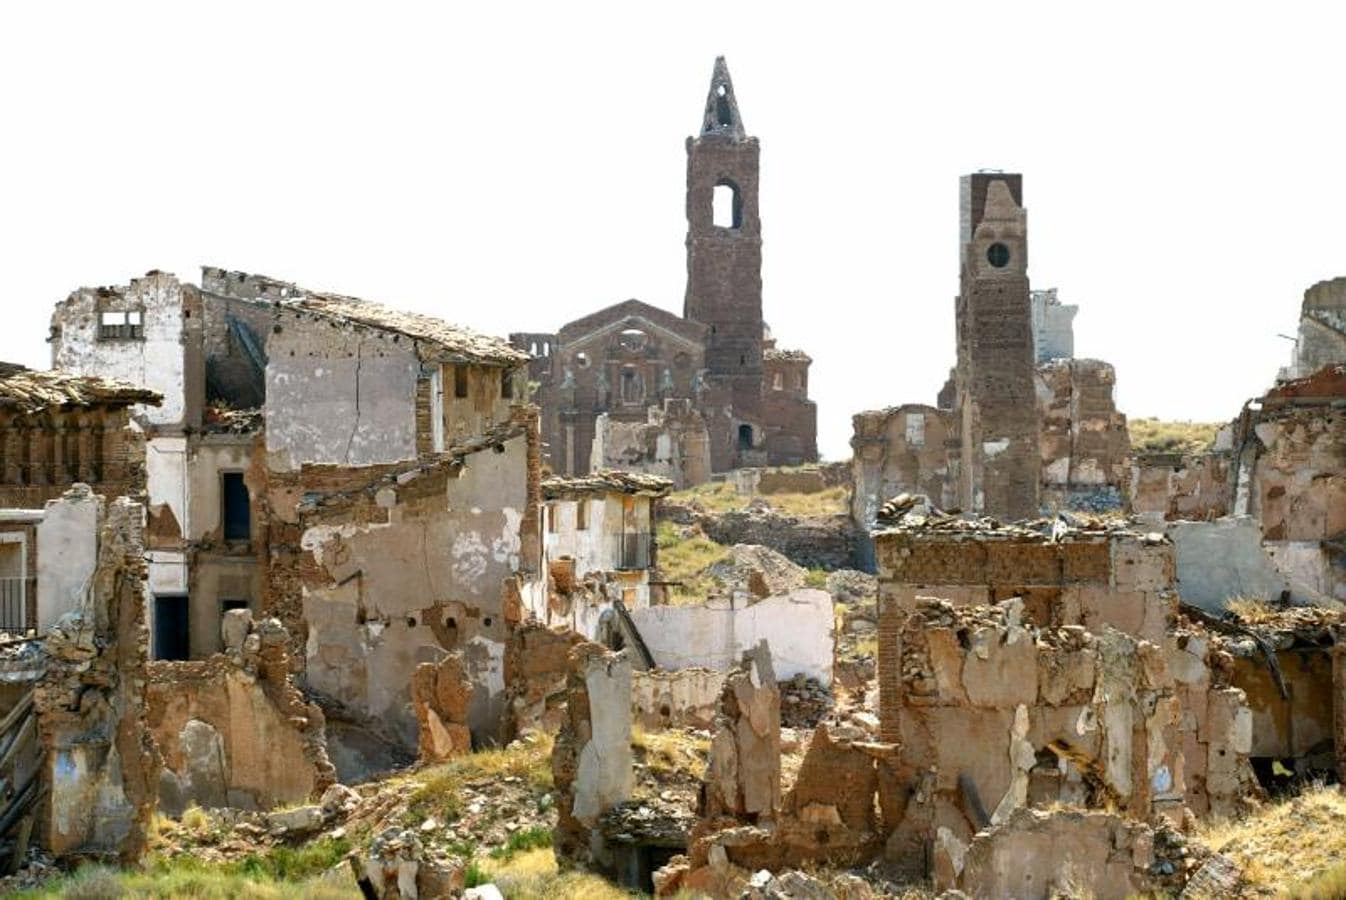 Las ruinas se caen. Fotografía de archivo de las ruinas de Belchite en 2003. Desde entonces, las ruinas no han dejado de sufrir nuevos derrumbes a falta de presupuestos para su conservación.